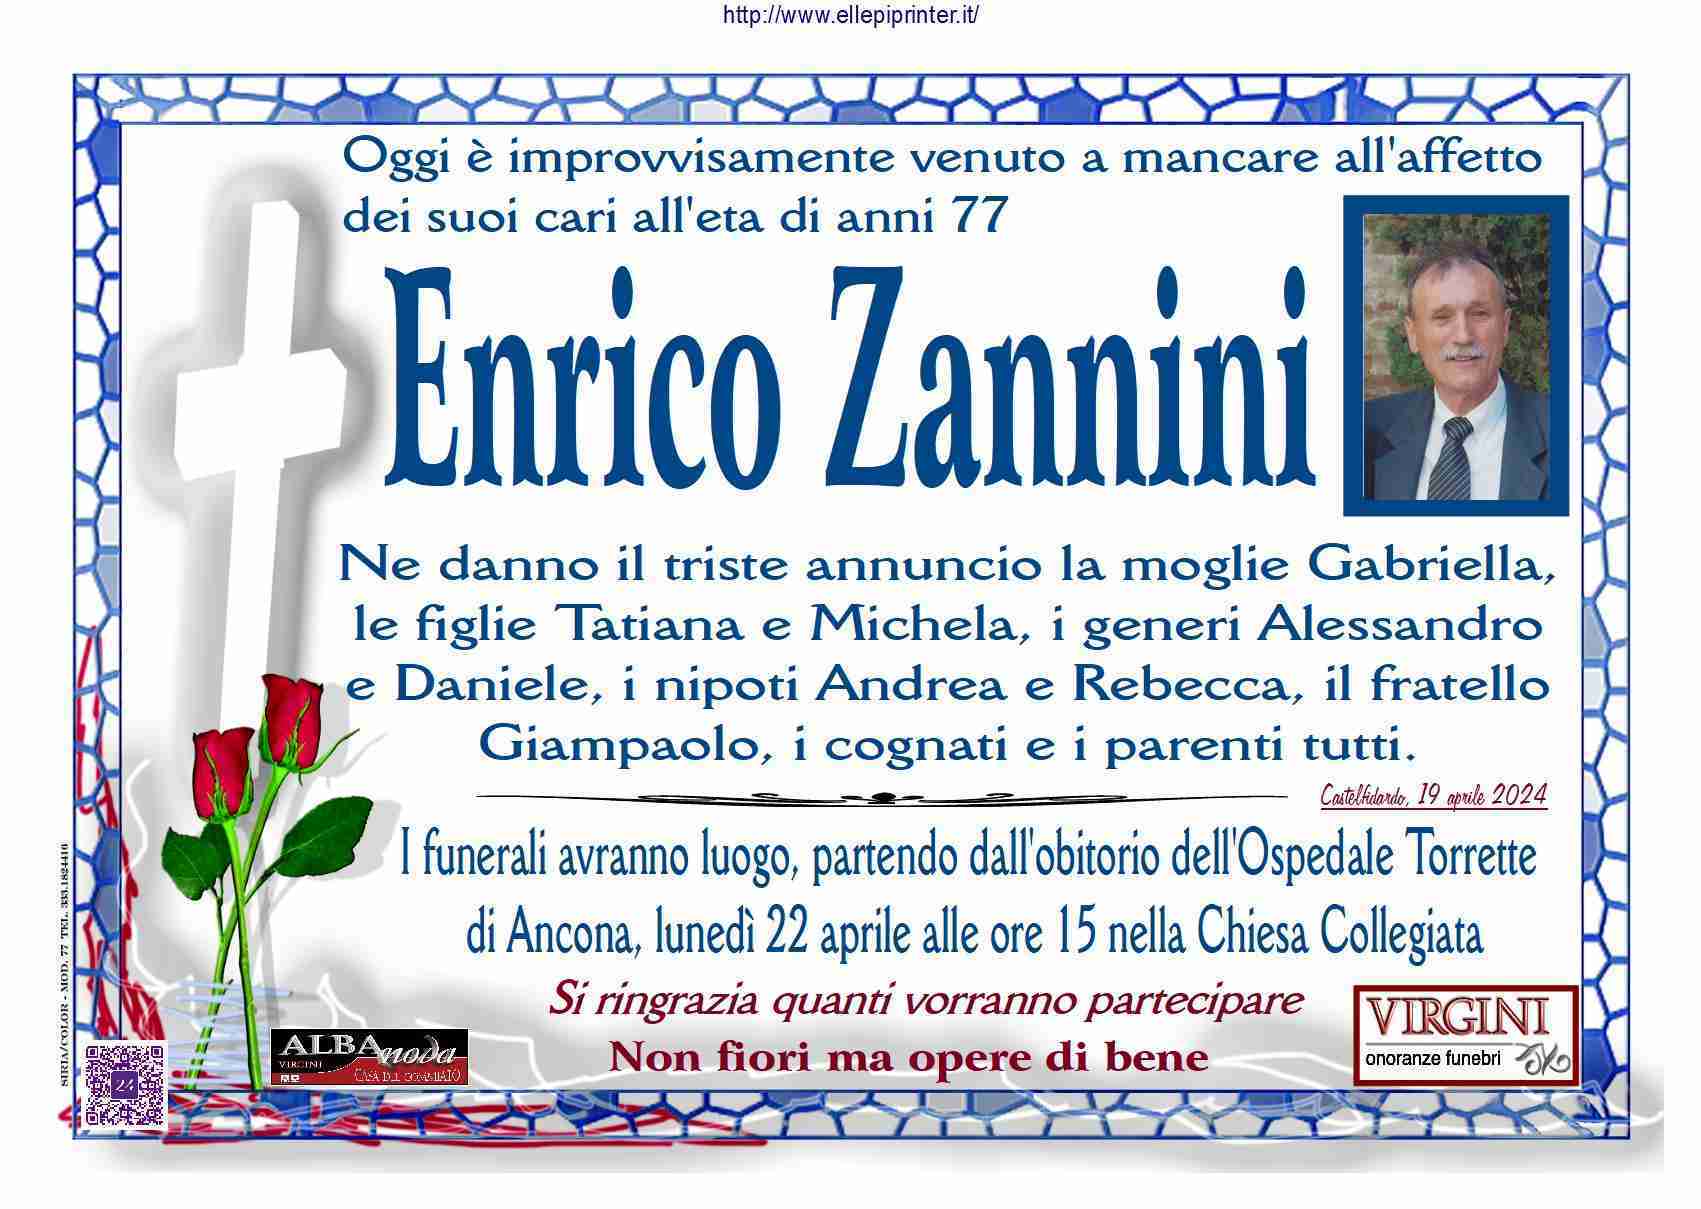 Enrico Zannini